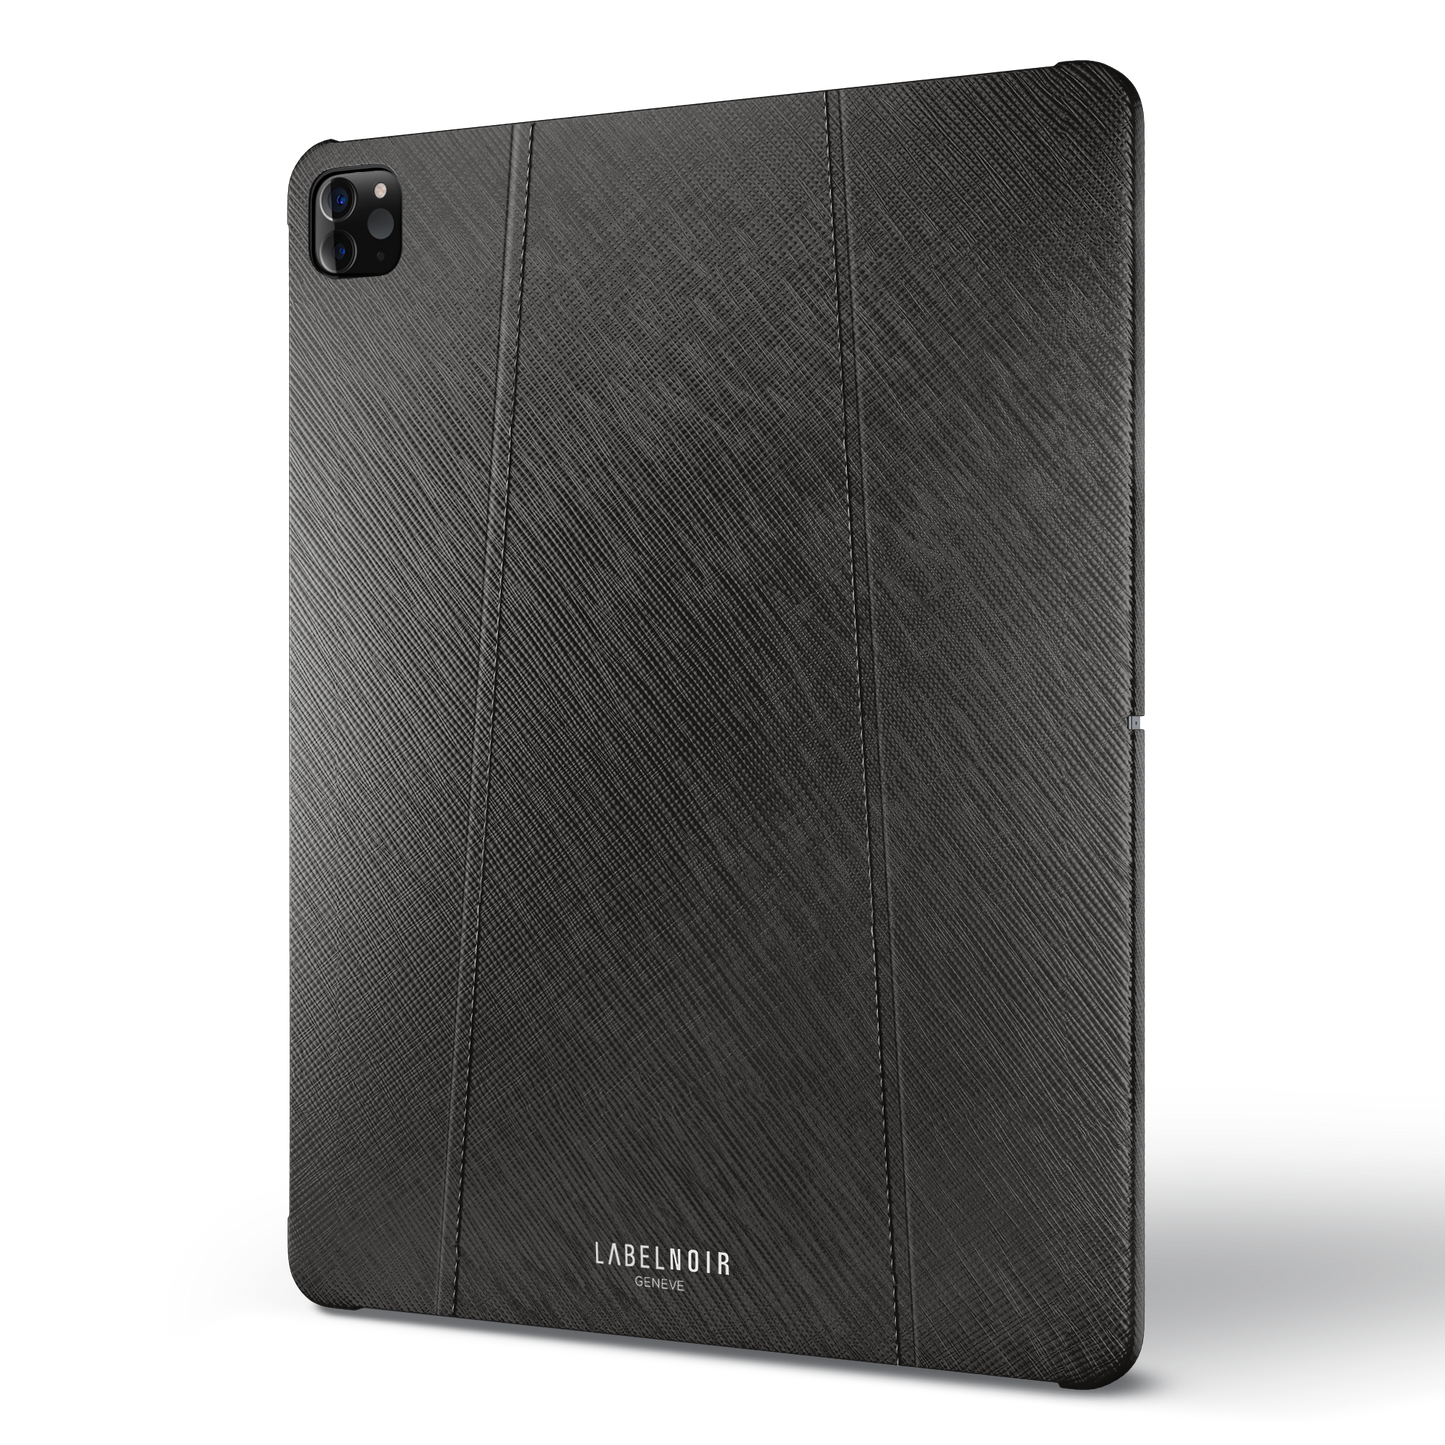 Ipad Pro (6th Gen) 12.9-inch Black Saffiano Case